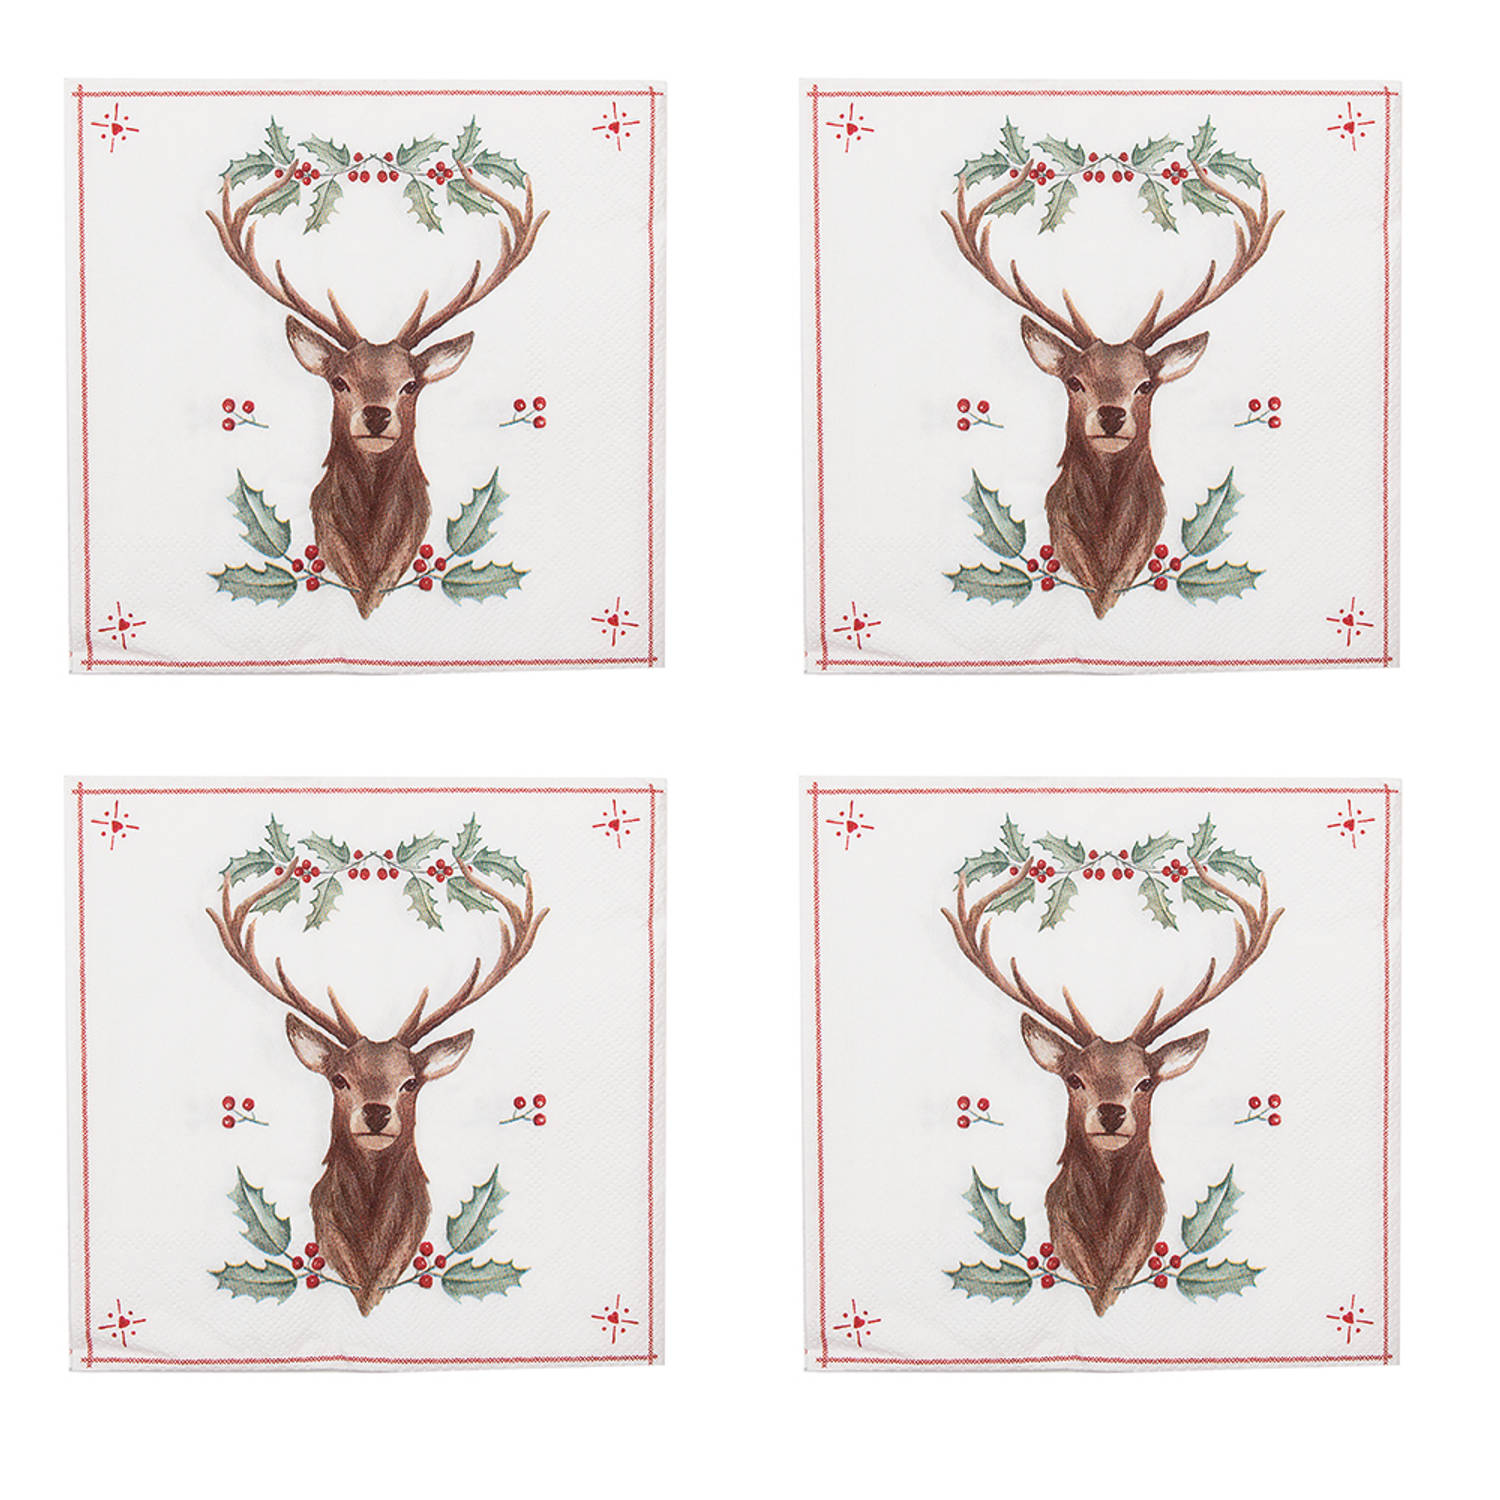 HAES DECO - Set van 4 Wegwerpservetten - formaat 33x33 cm (20 stuks in verpakking) - kleuren Wit / Rood / Bruin / Groen - van Papier - Collectie: Holly Christmas - Totaal 80 Servet